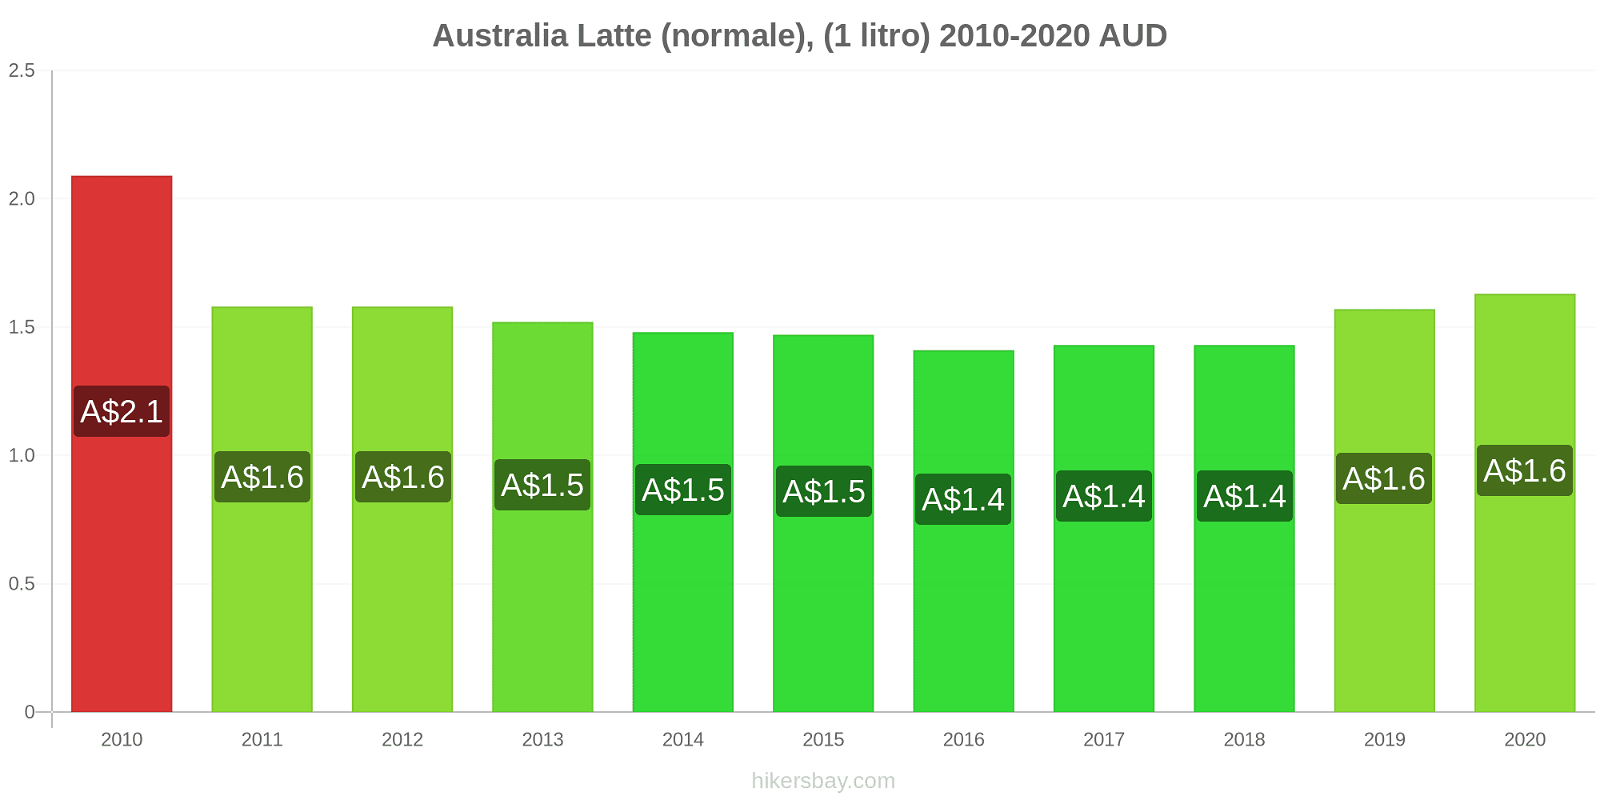 Australia variazioni di prezzo Latte (1 litro) hikersbay.com